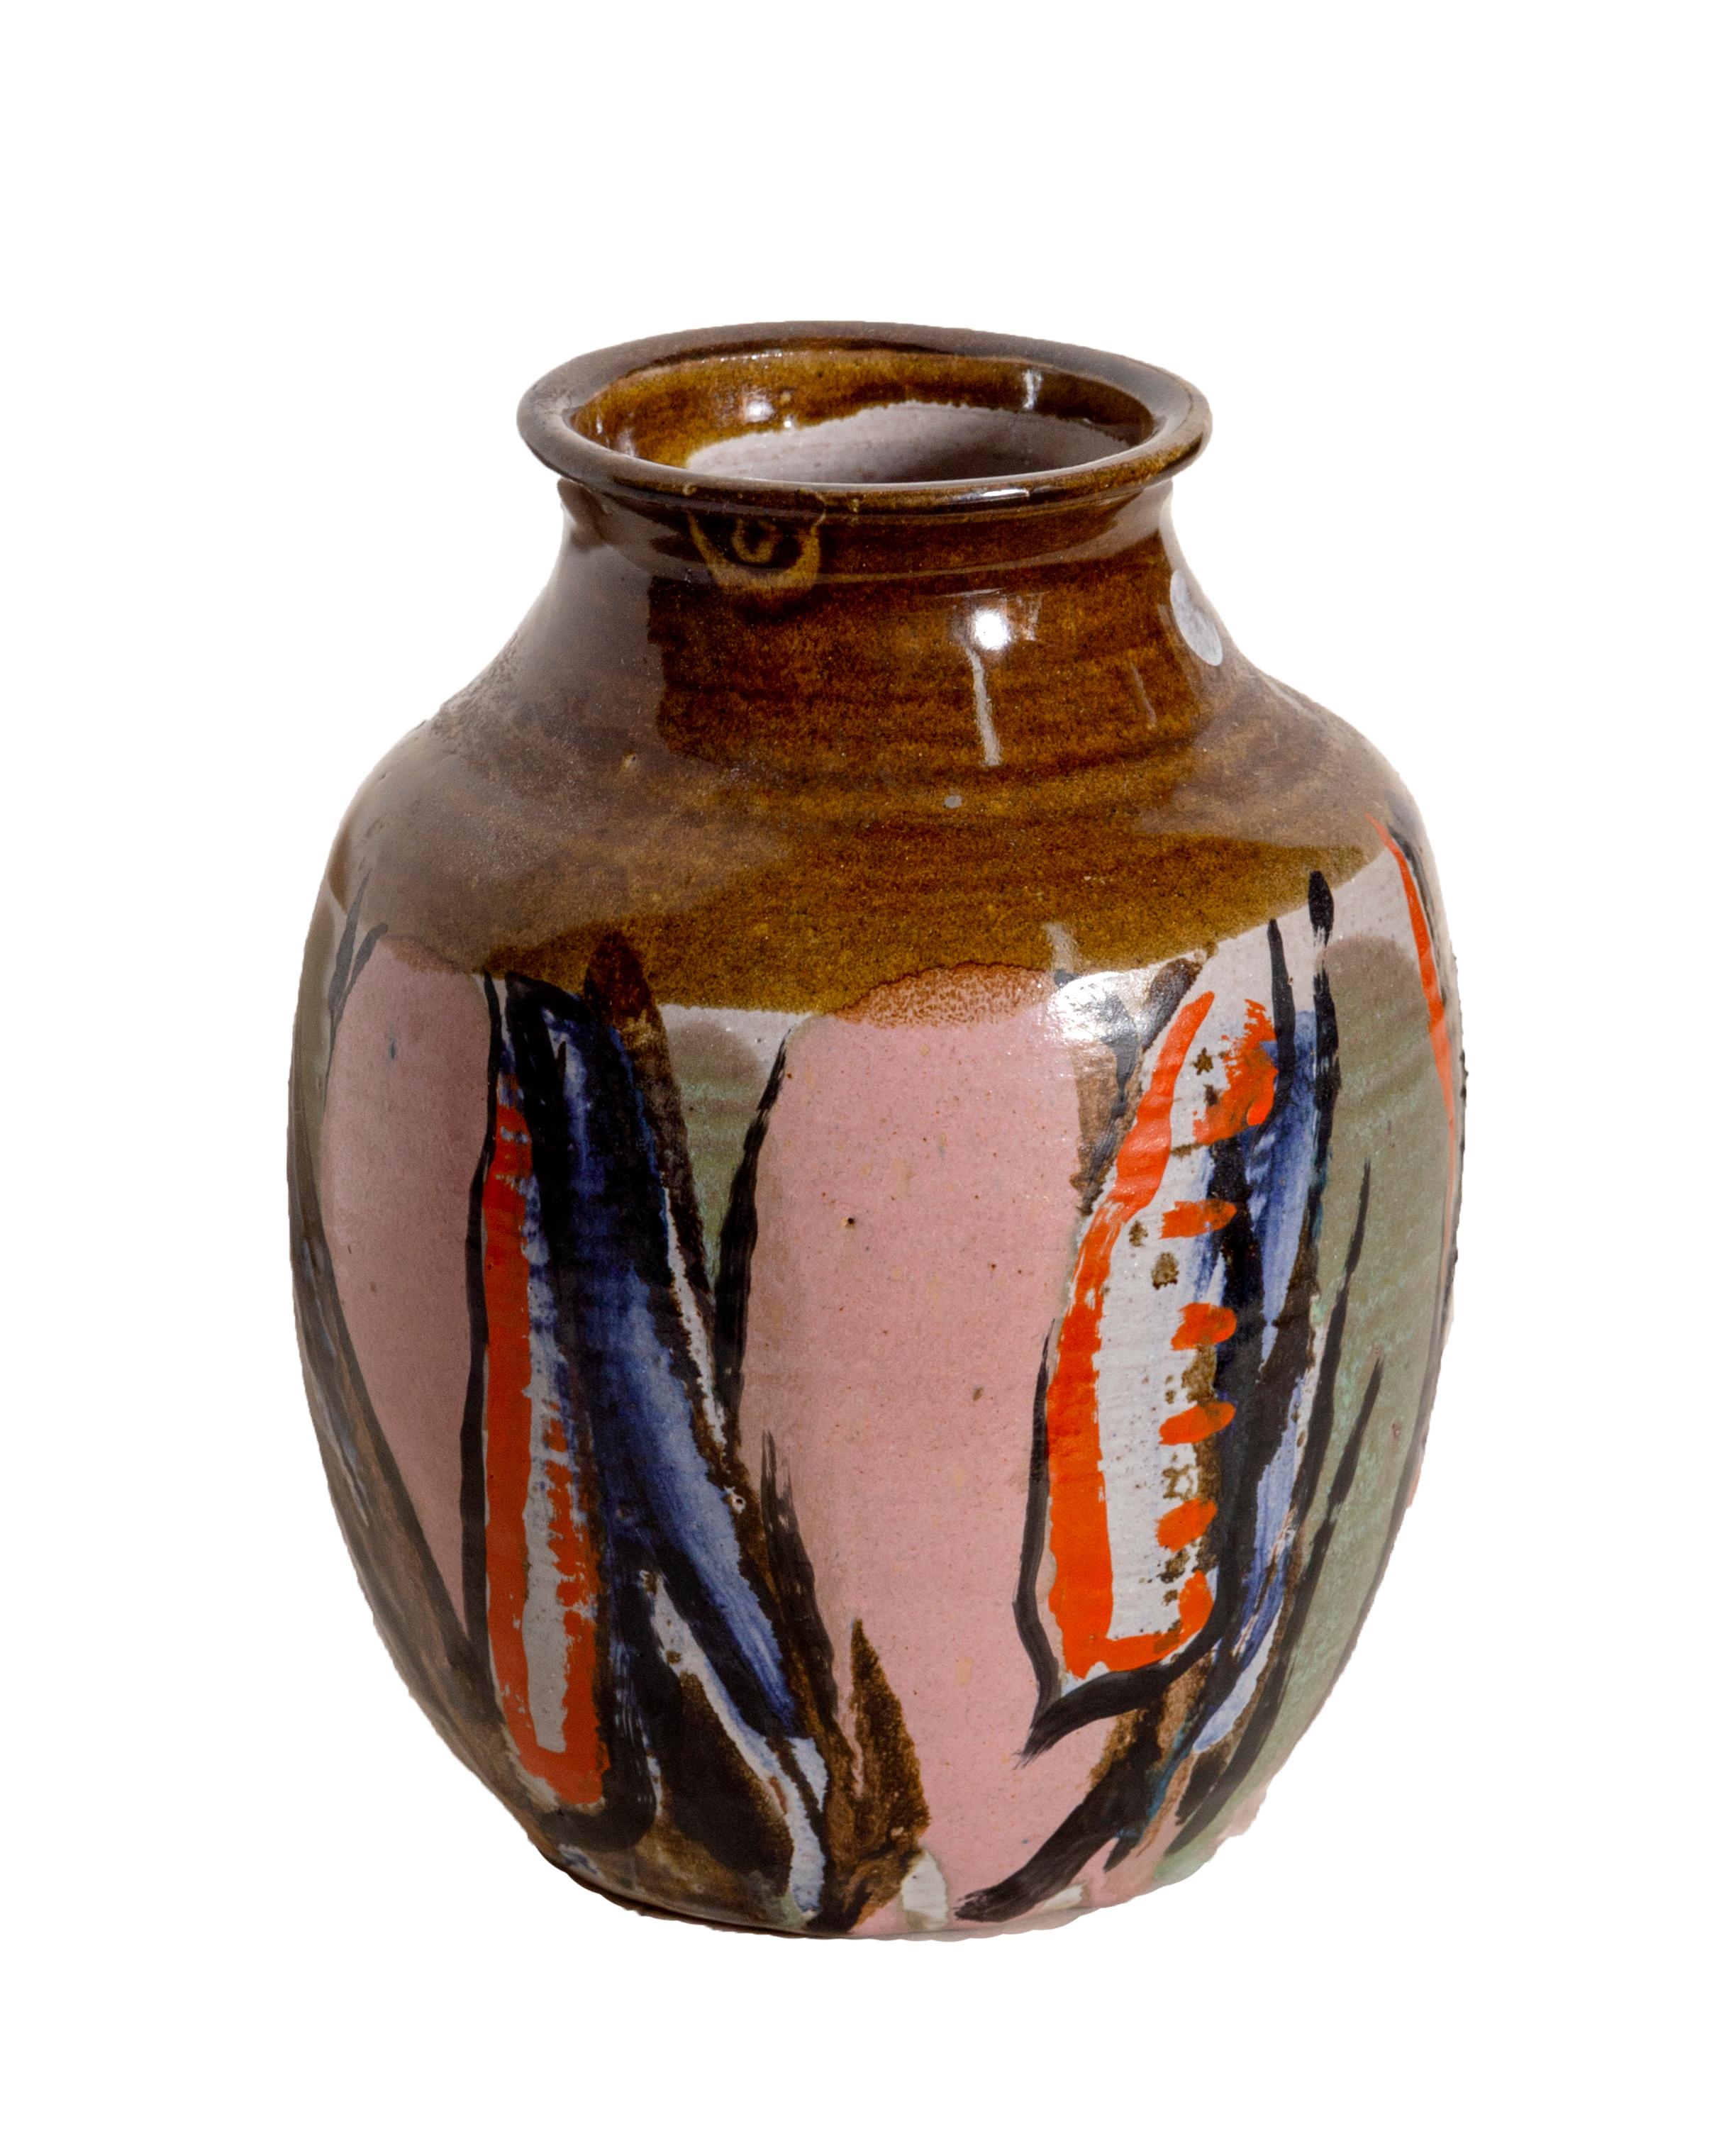 Charcoal stone glazed vase